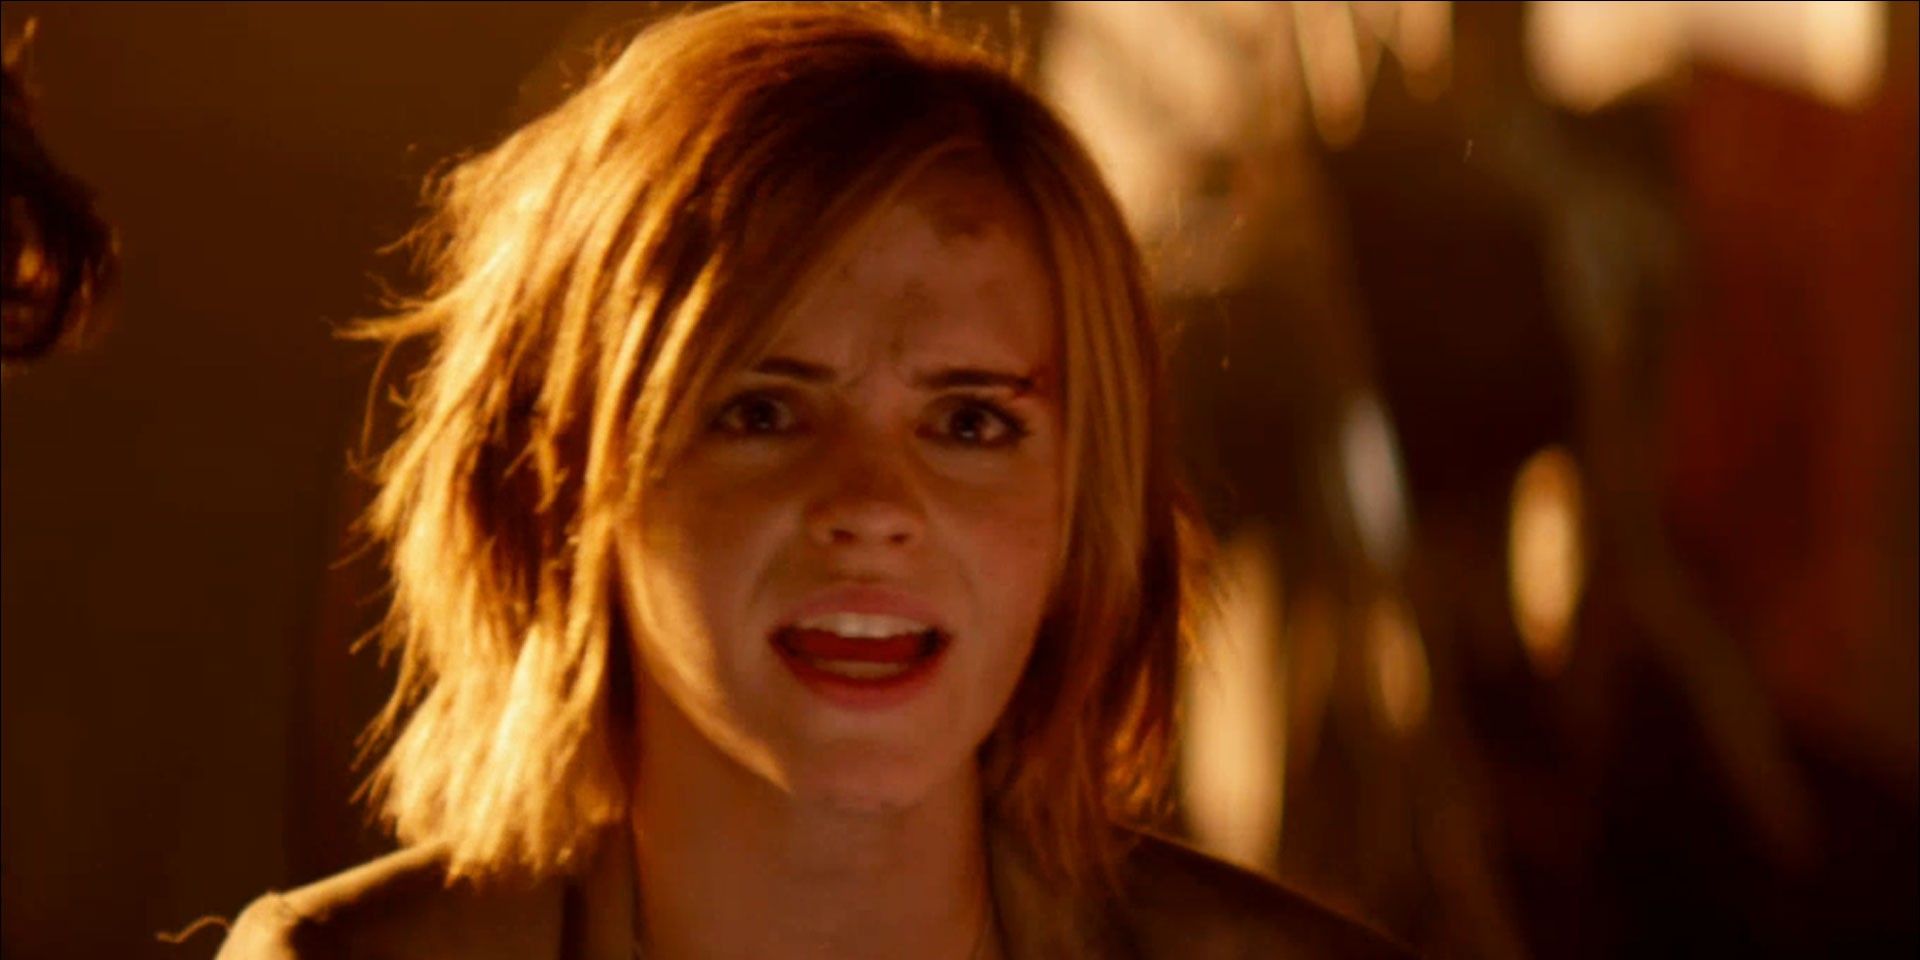 Seth Rogen confirma que Emma Watson se fue de este set final